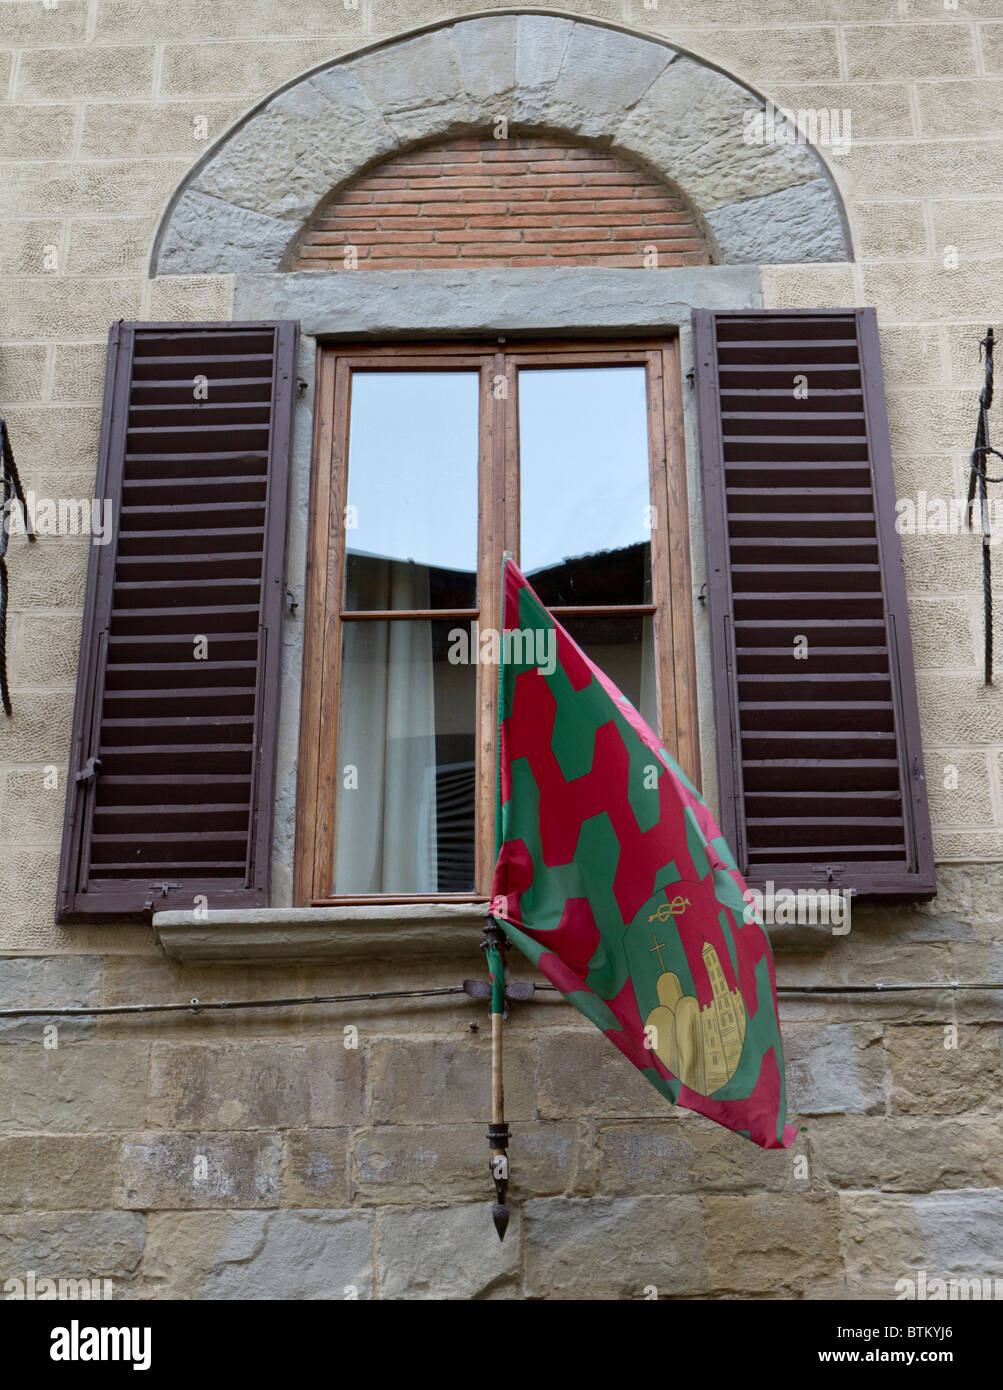 Détail d'une fenêtre à Arezzo montrant un drapeau rouge et vert Banque D'Images